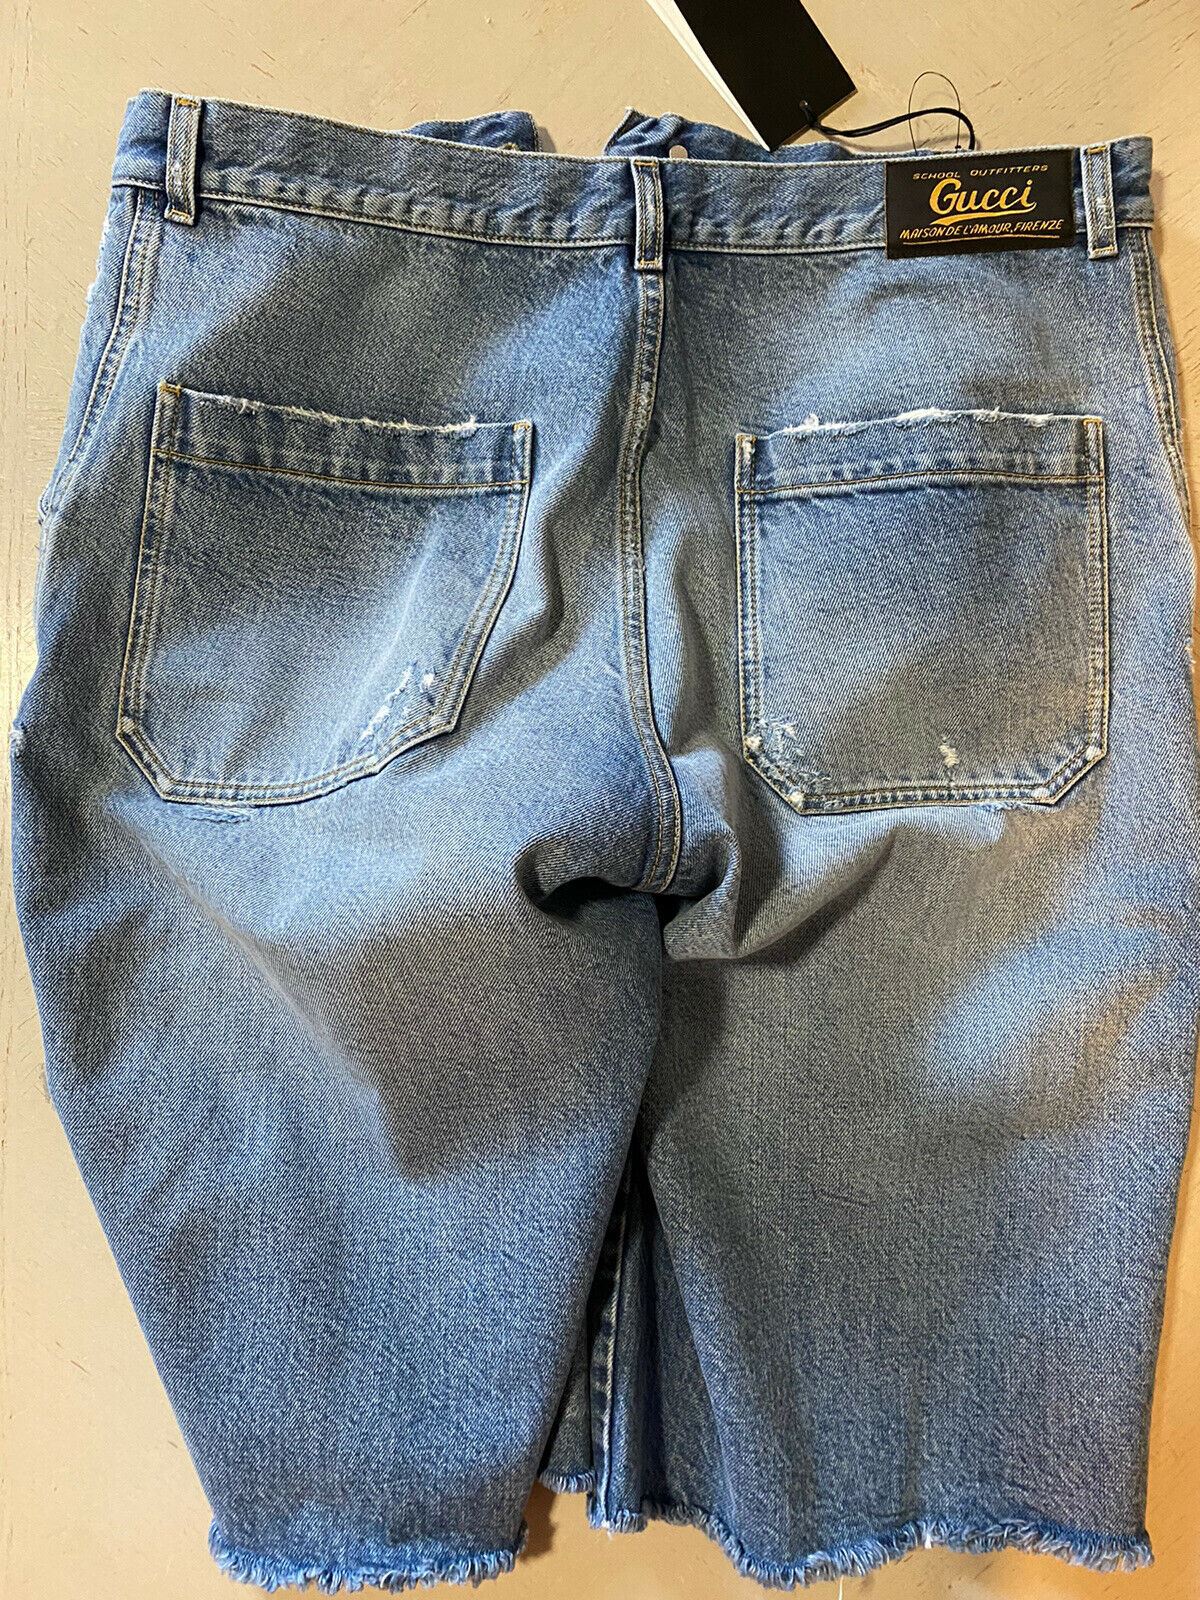 Neu mit Etikett: 1.500 $ Gucci kurze Jeanshose für Herren, blau, Größe 36